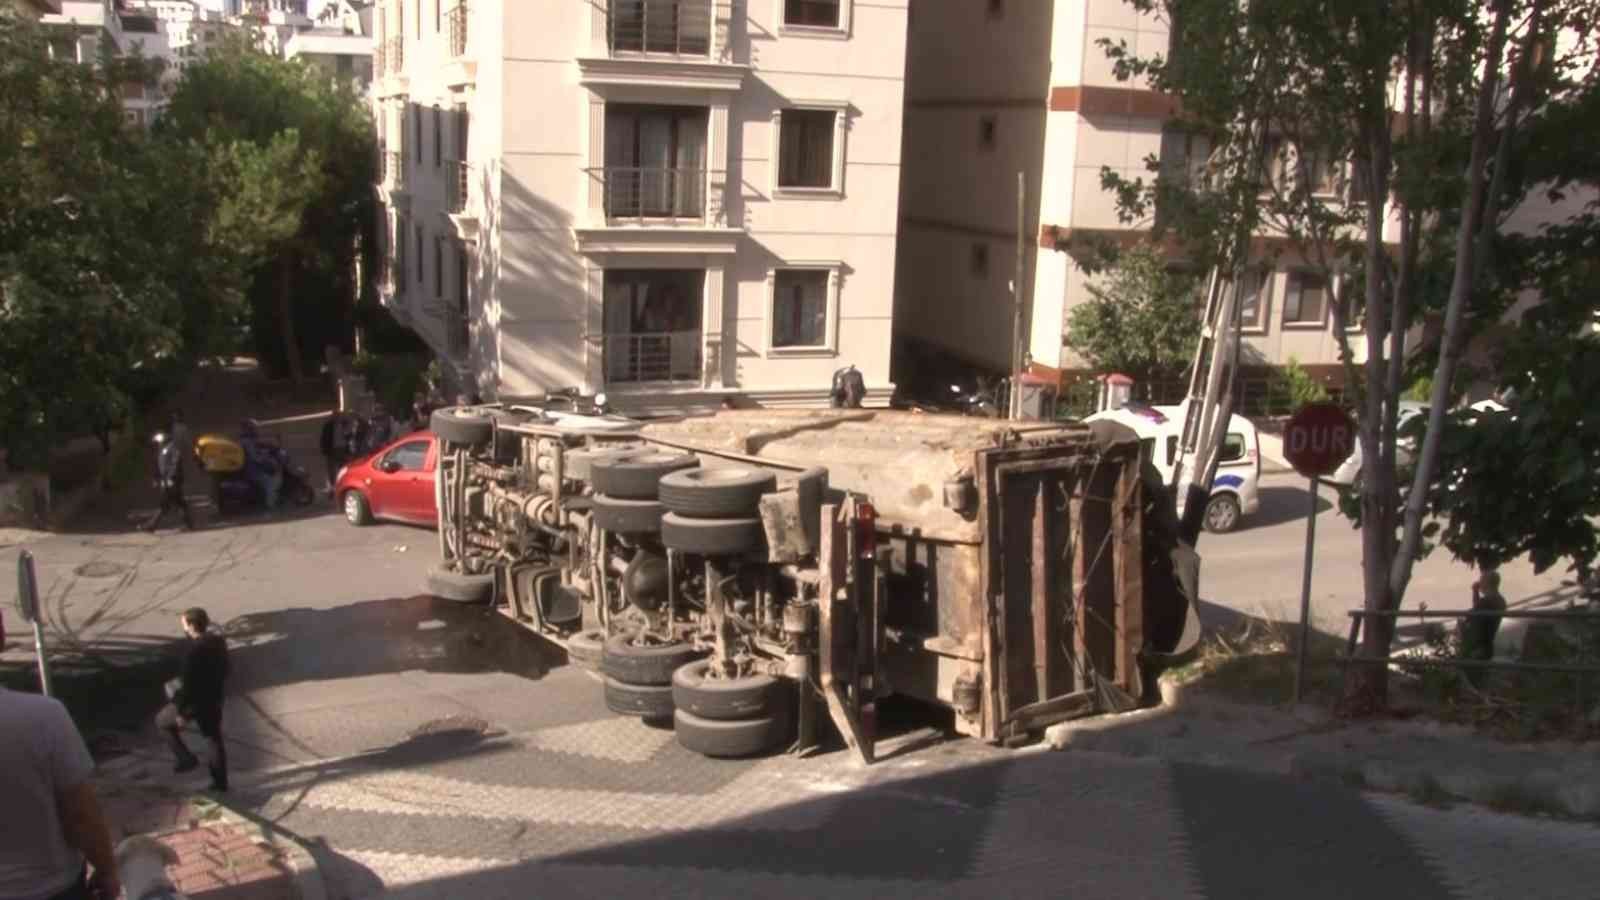 Maltepe’de virajı dönen kamyon yola devrildi #istanbul